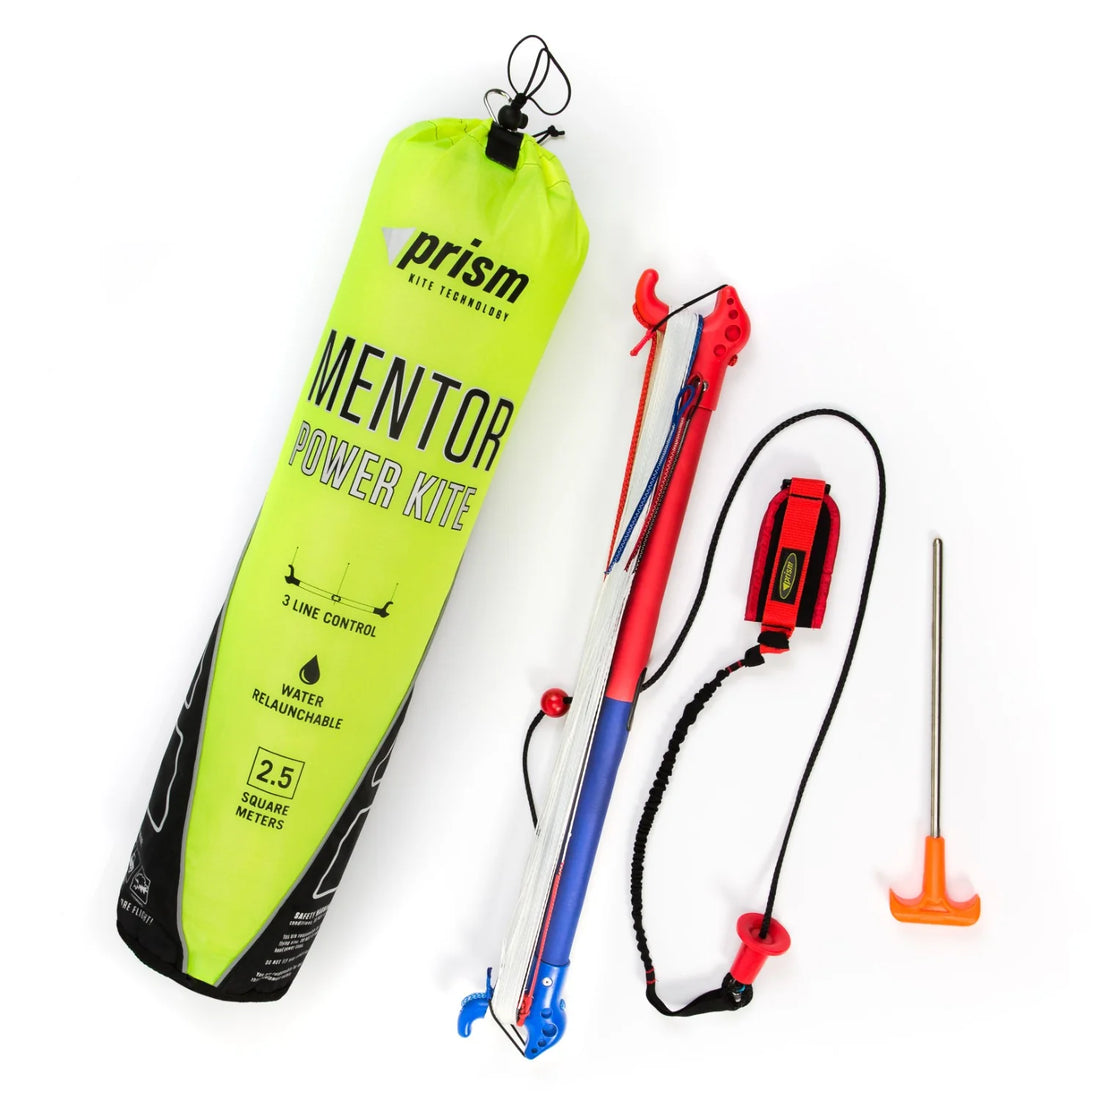 Mentor Power Kite 2.5